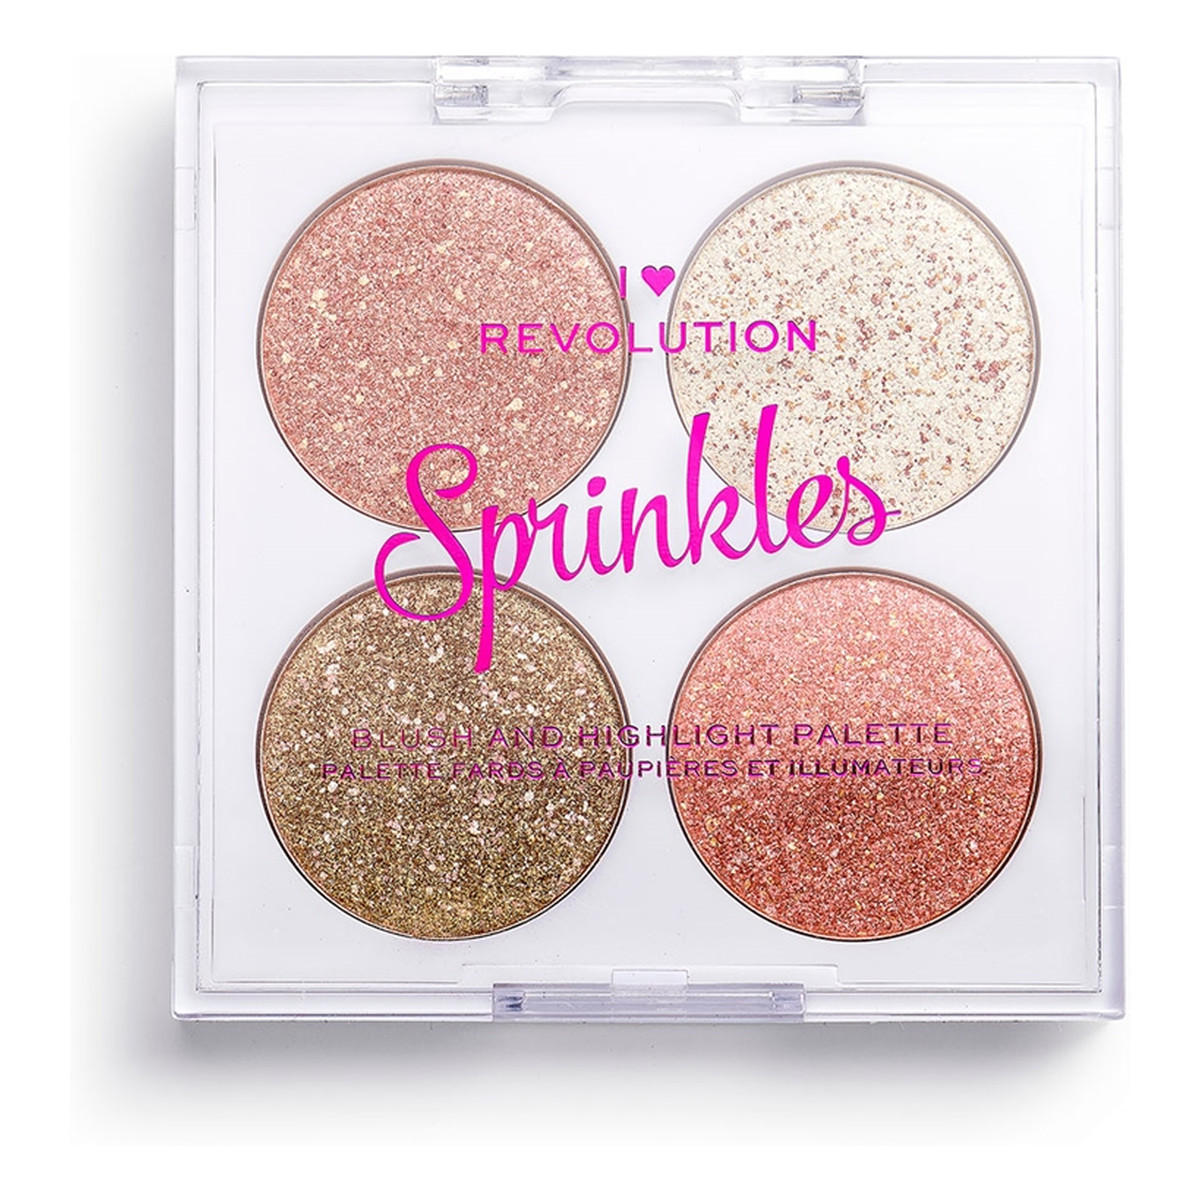 Makeup Revolution Blush & Sprinkles paletka różów do twarzy Confertti Cookie